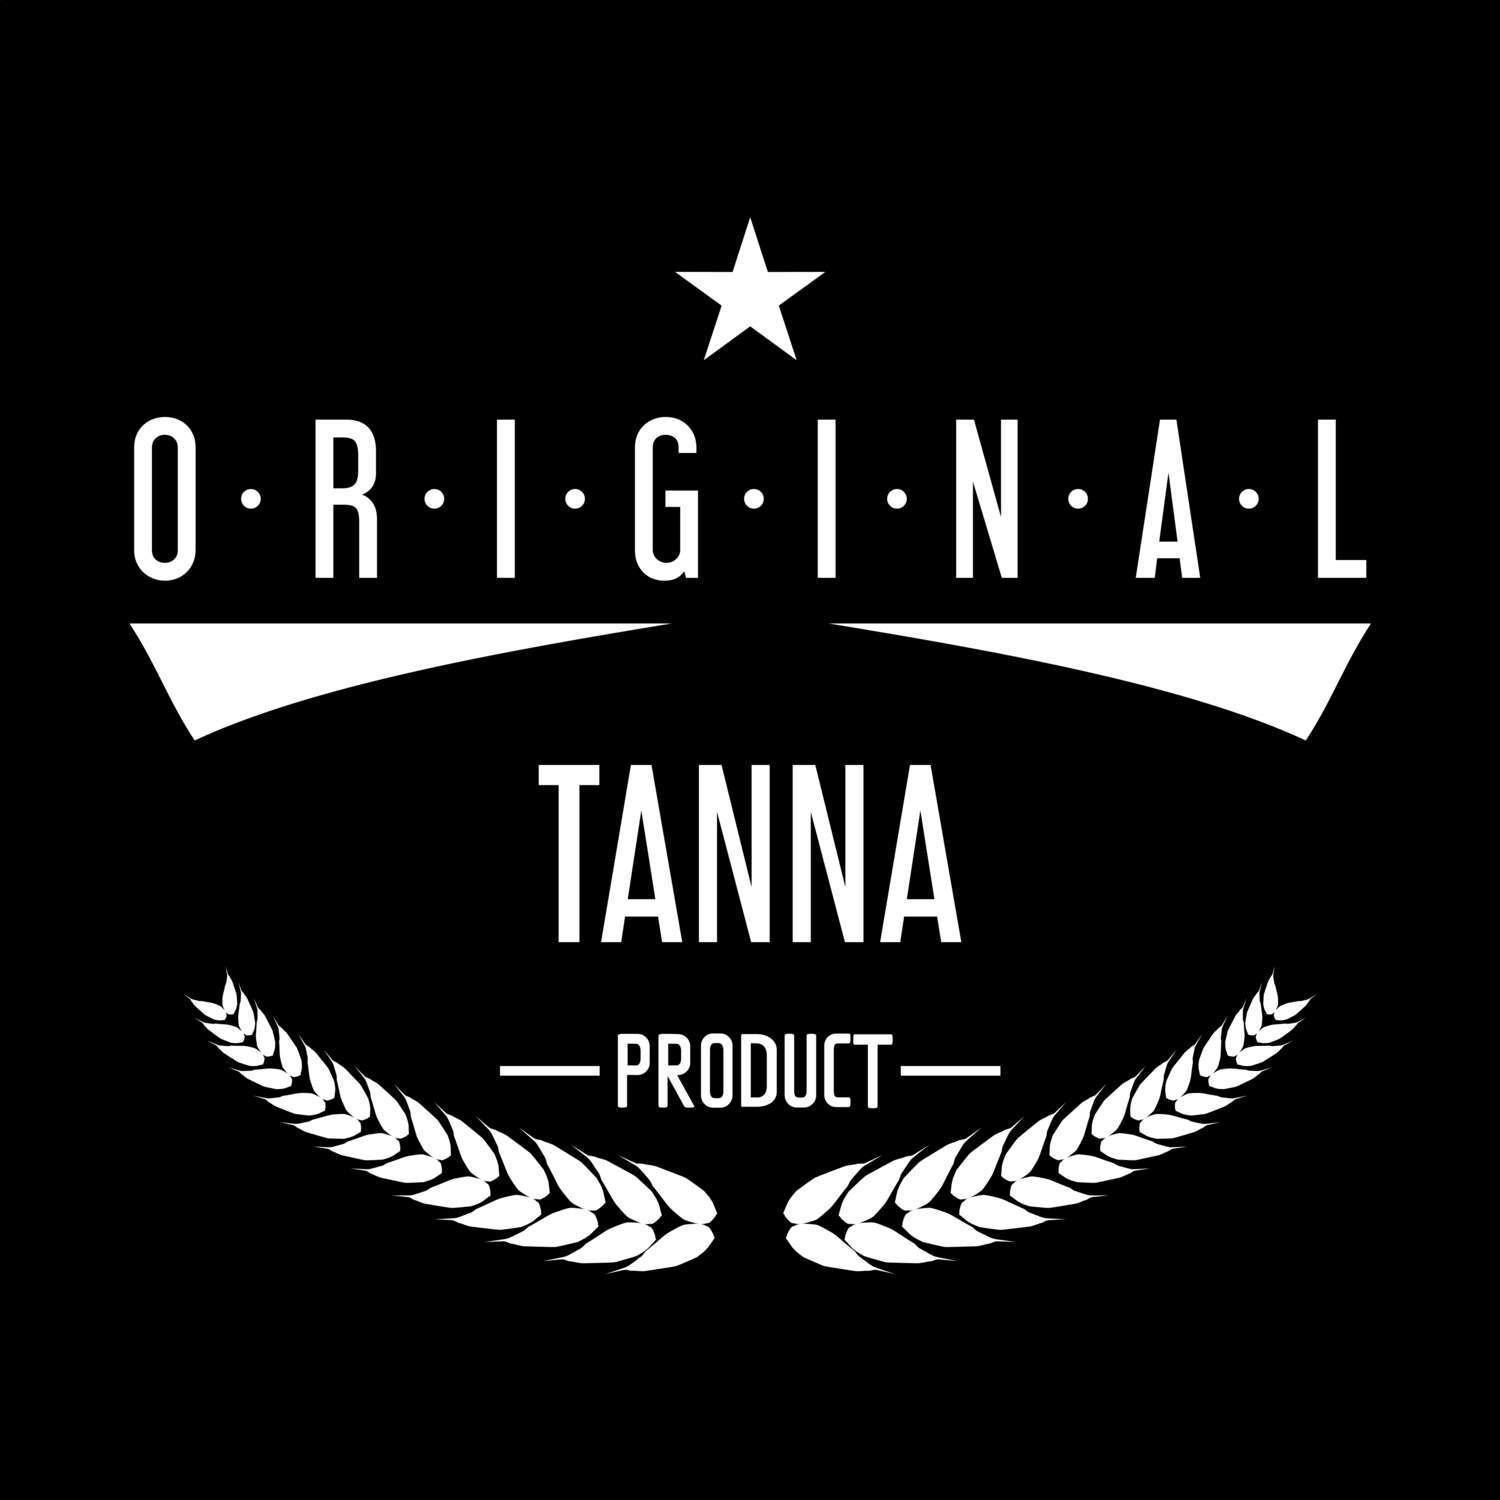 Tanna T-Shirt »Original Product«